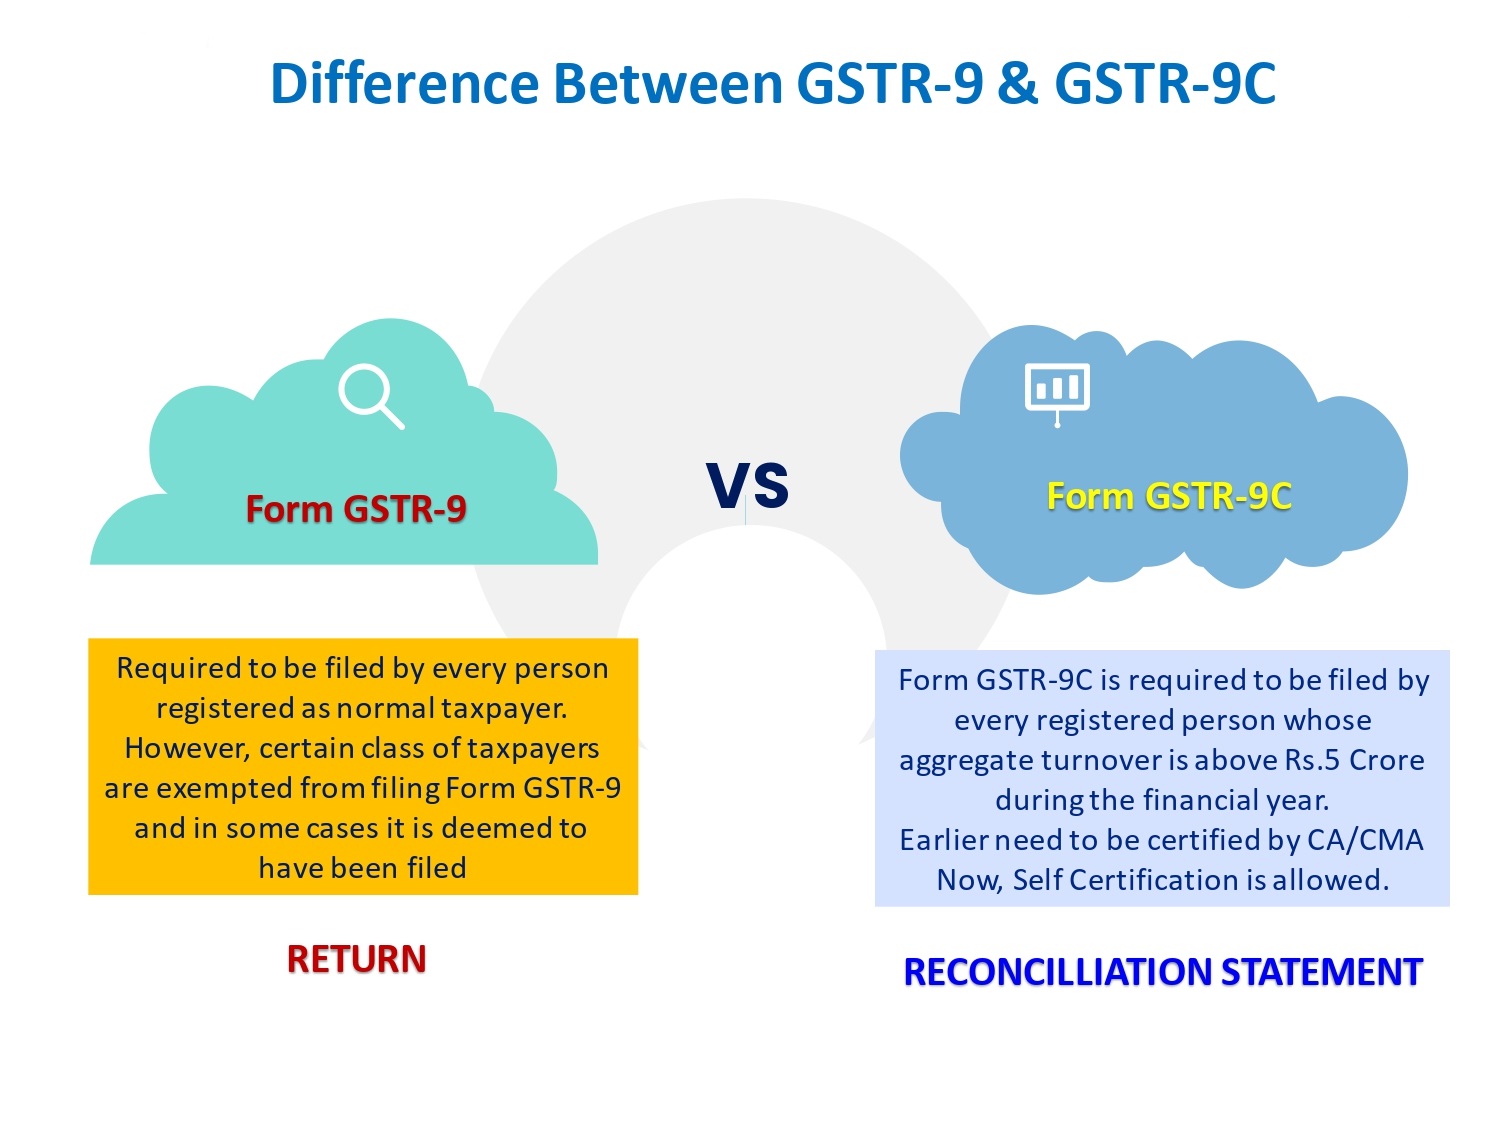 GSTR 9 and GSTR 9C